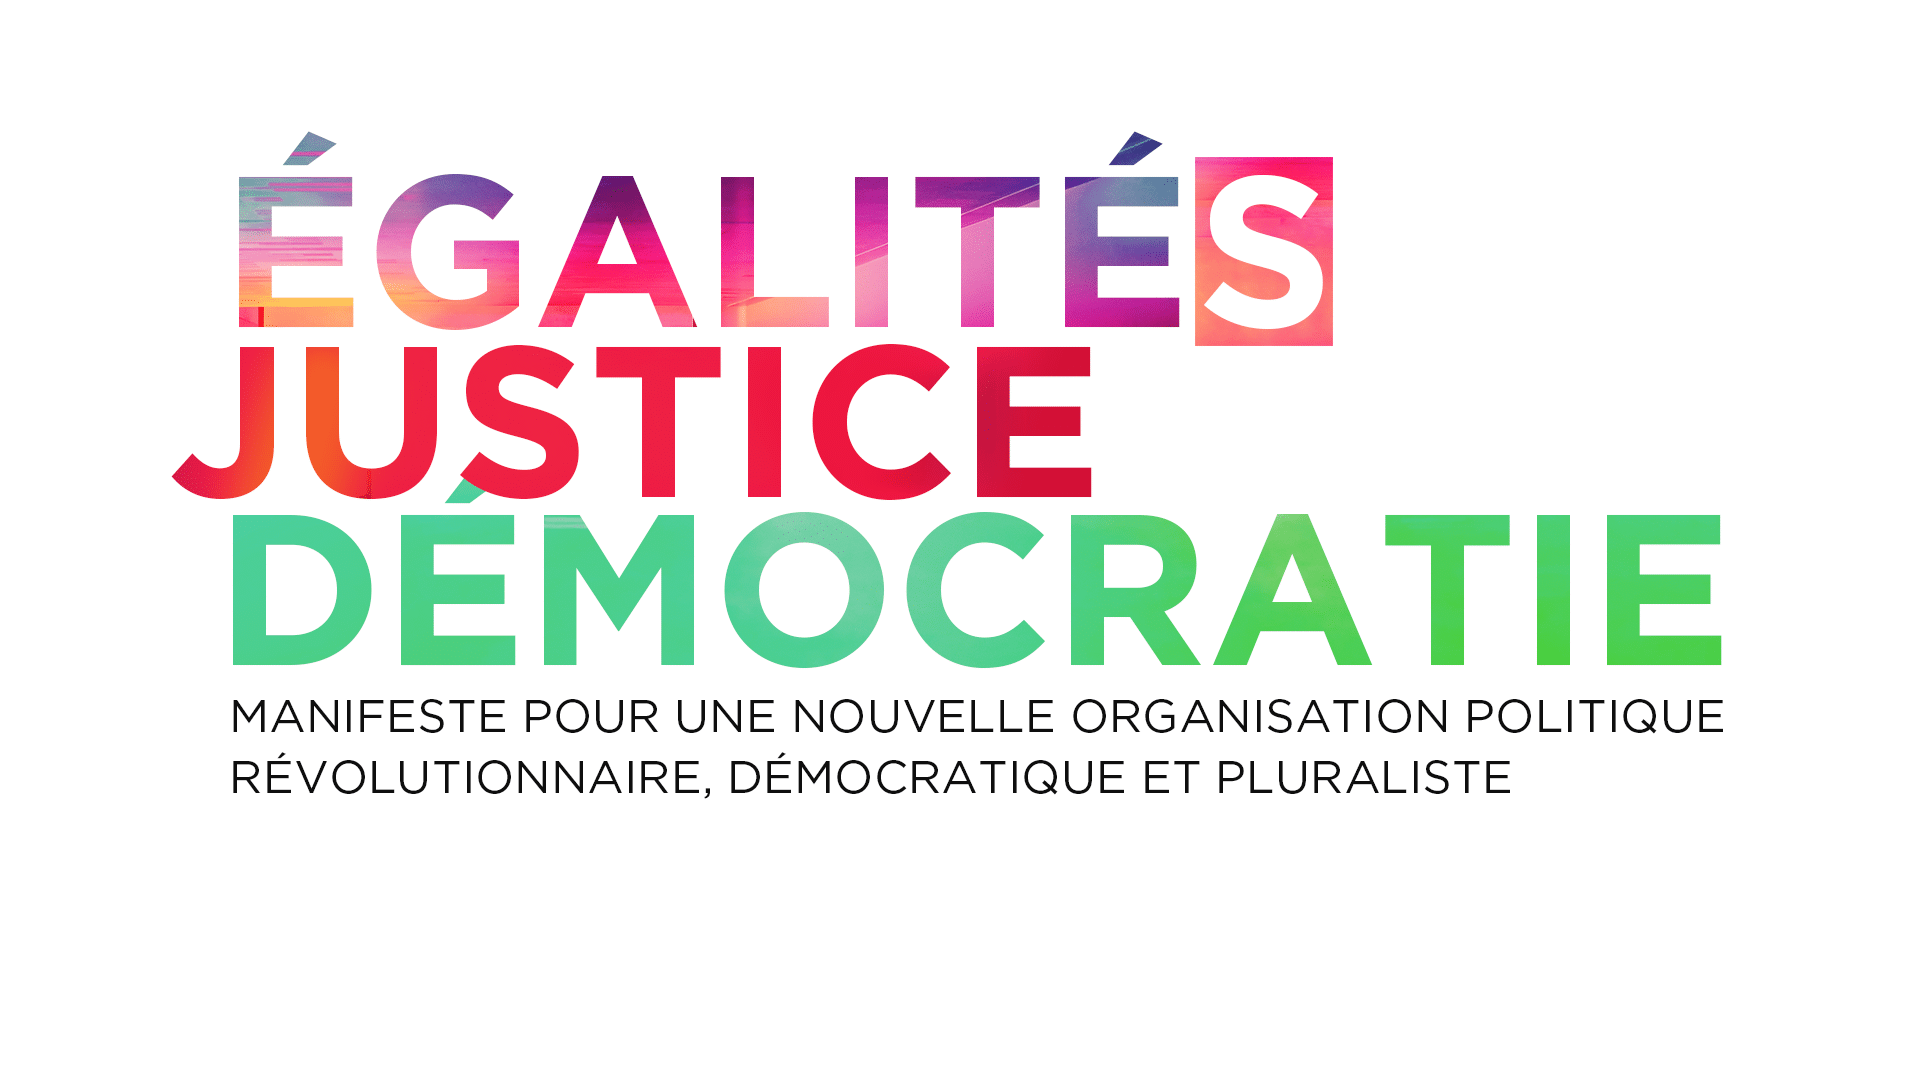 Logo : Égalités, justice, démocratie<br />
Manifeste pour une nouvelle organisation politique révolutionnaire, démocratique et pluraliste, pour la justice sociale et environnementale et toutes les égalités.